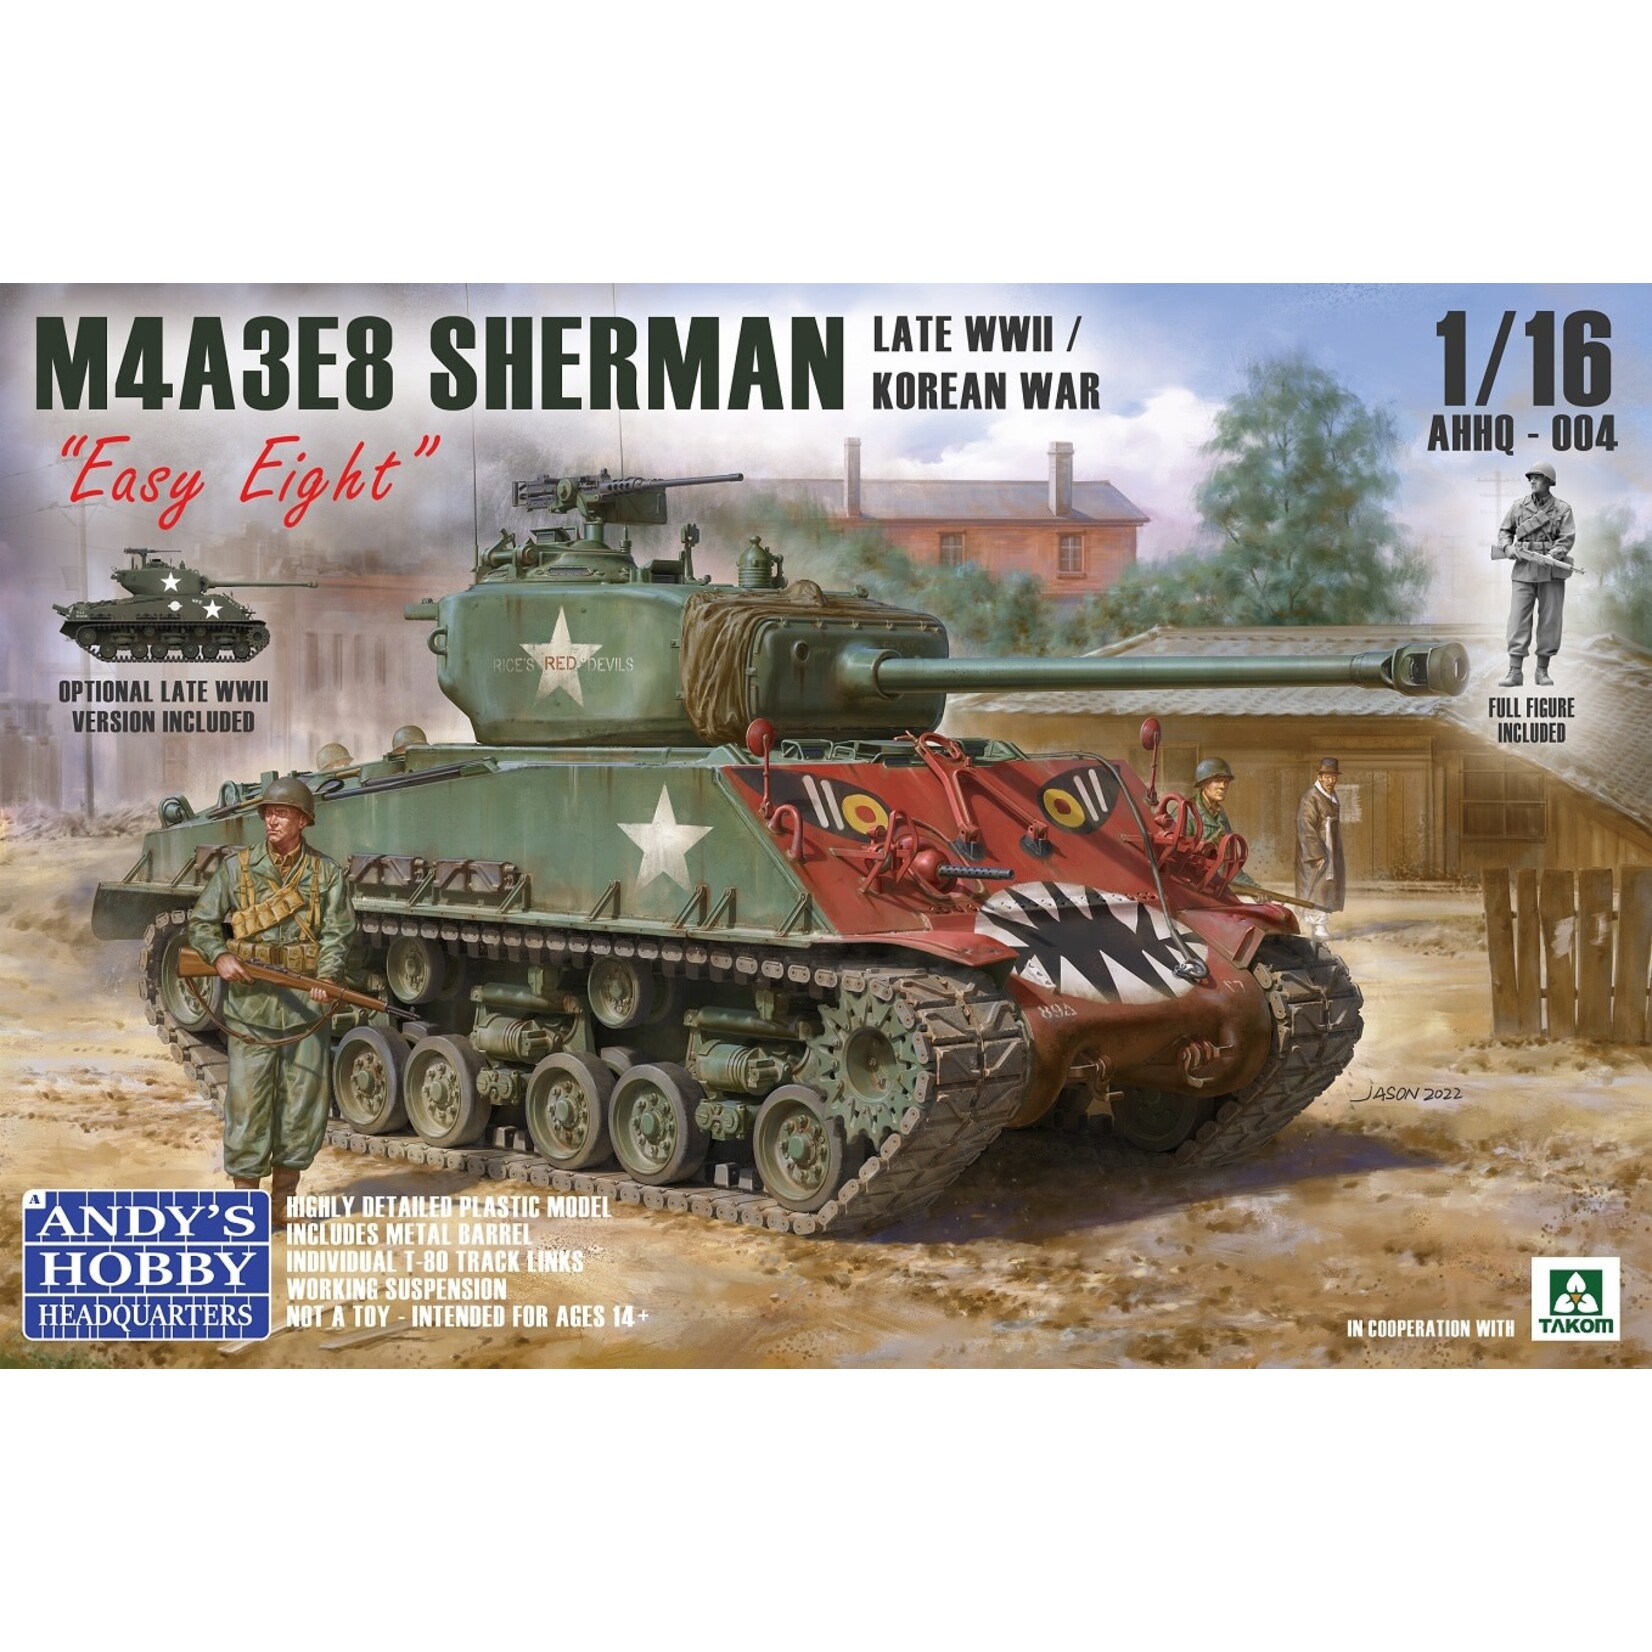 Andys Hobby Headquarters AHHQ004 M4A3E8 Sherman Korean War (1/16)